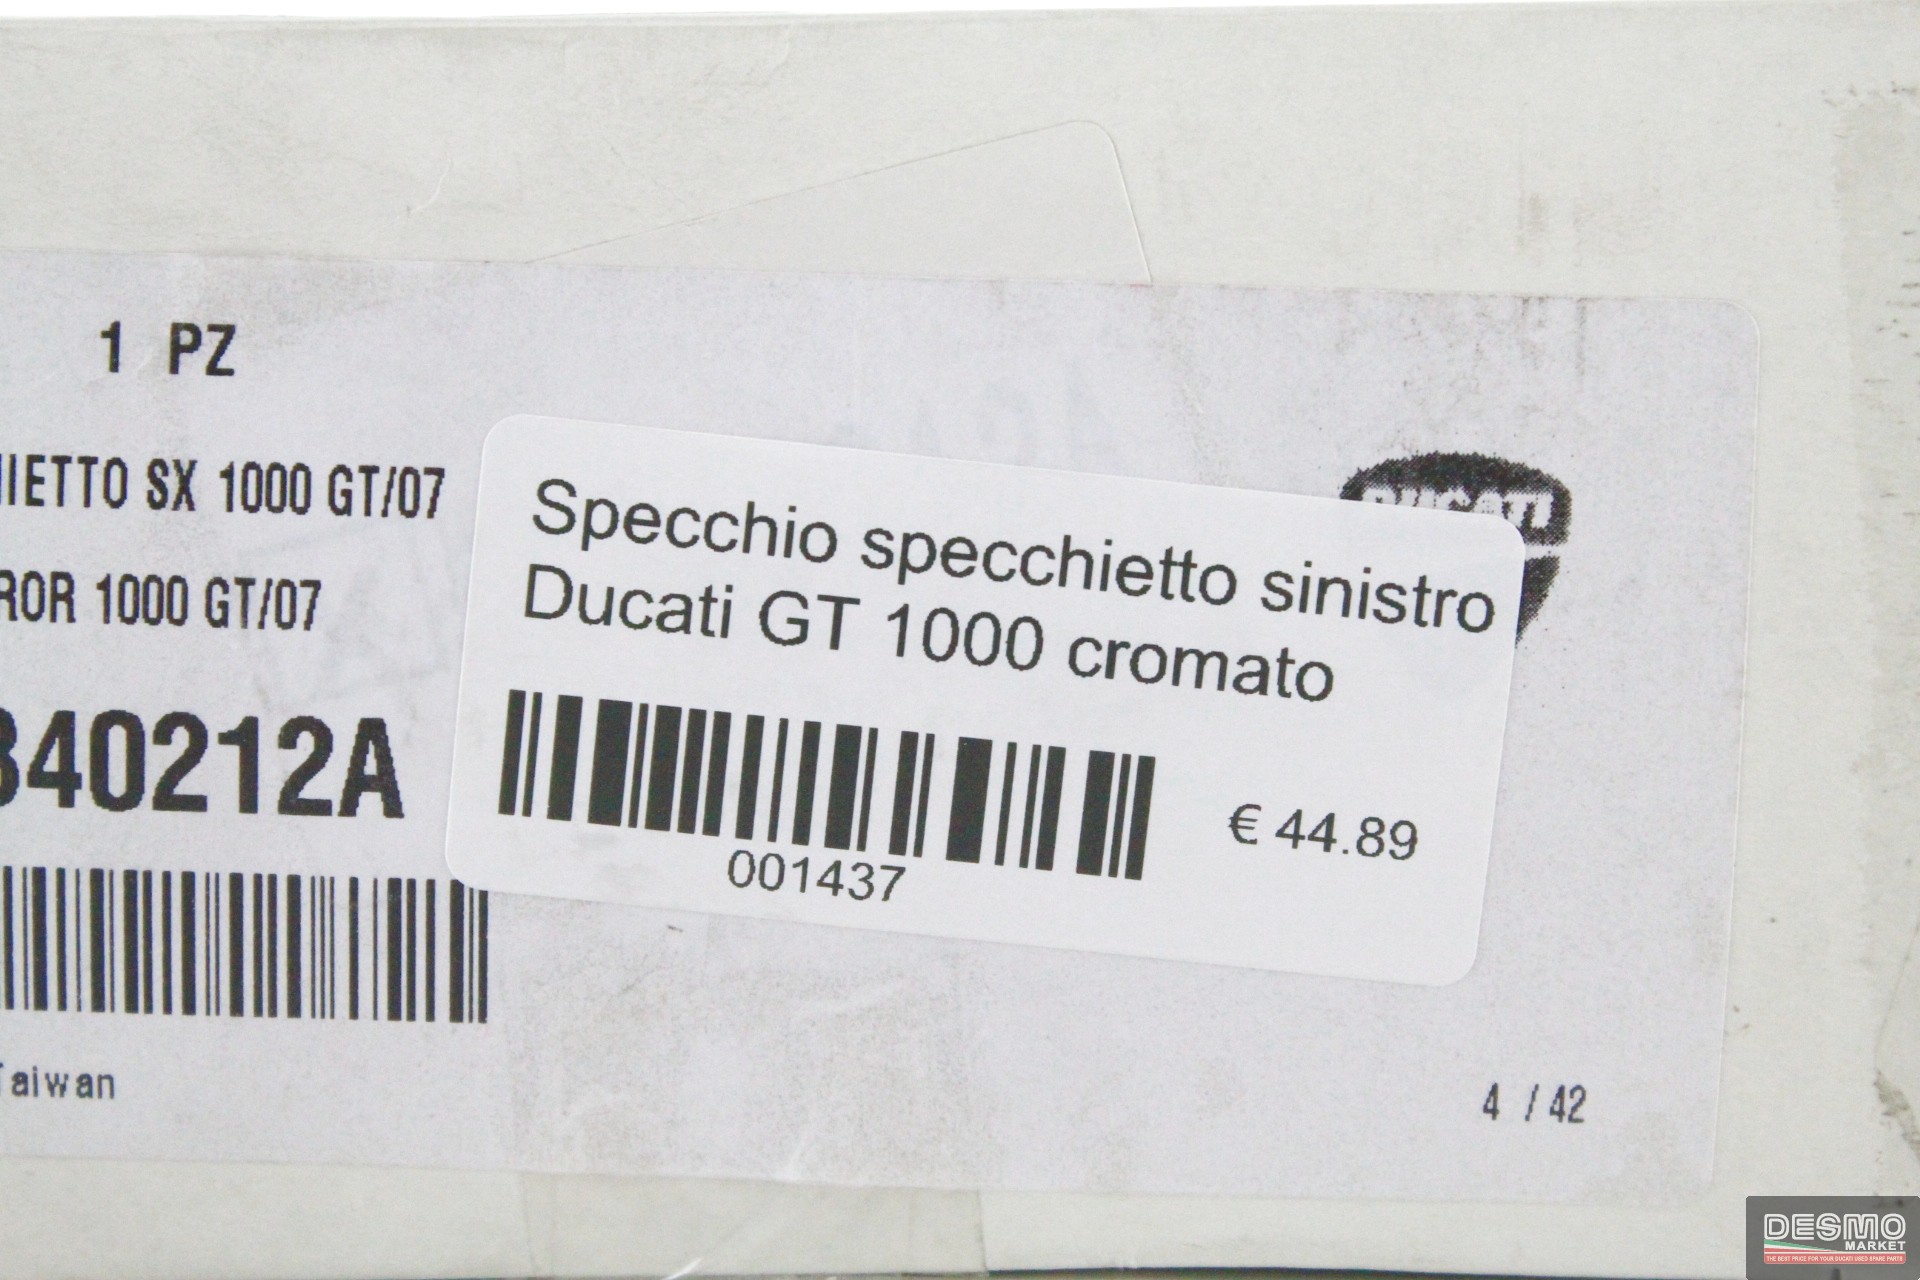 Specchio specchietto sinistro Ducati GT 1000 cromato